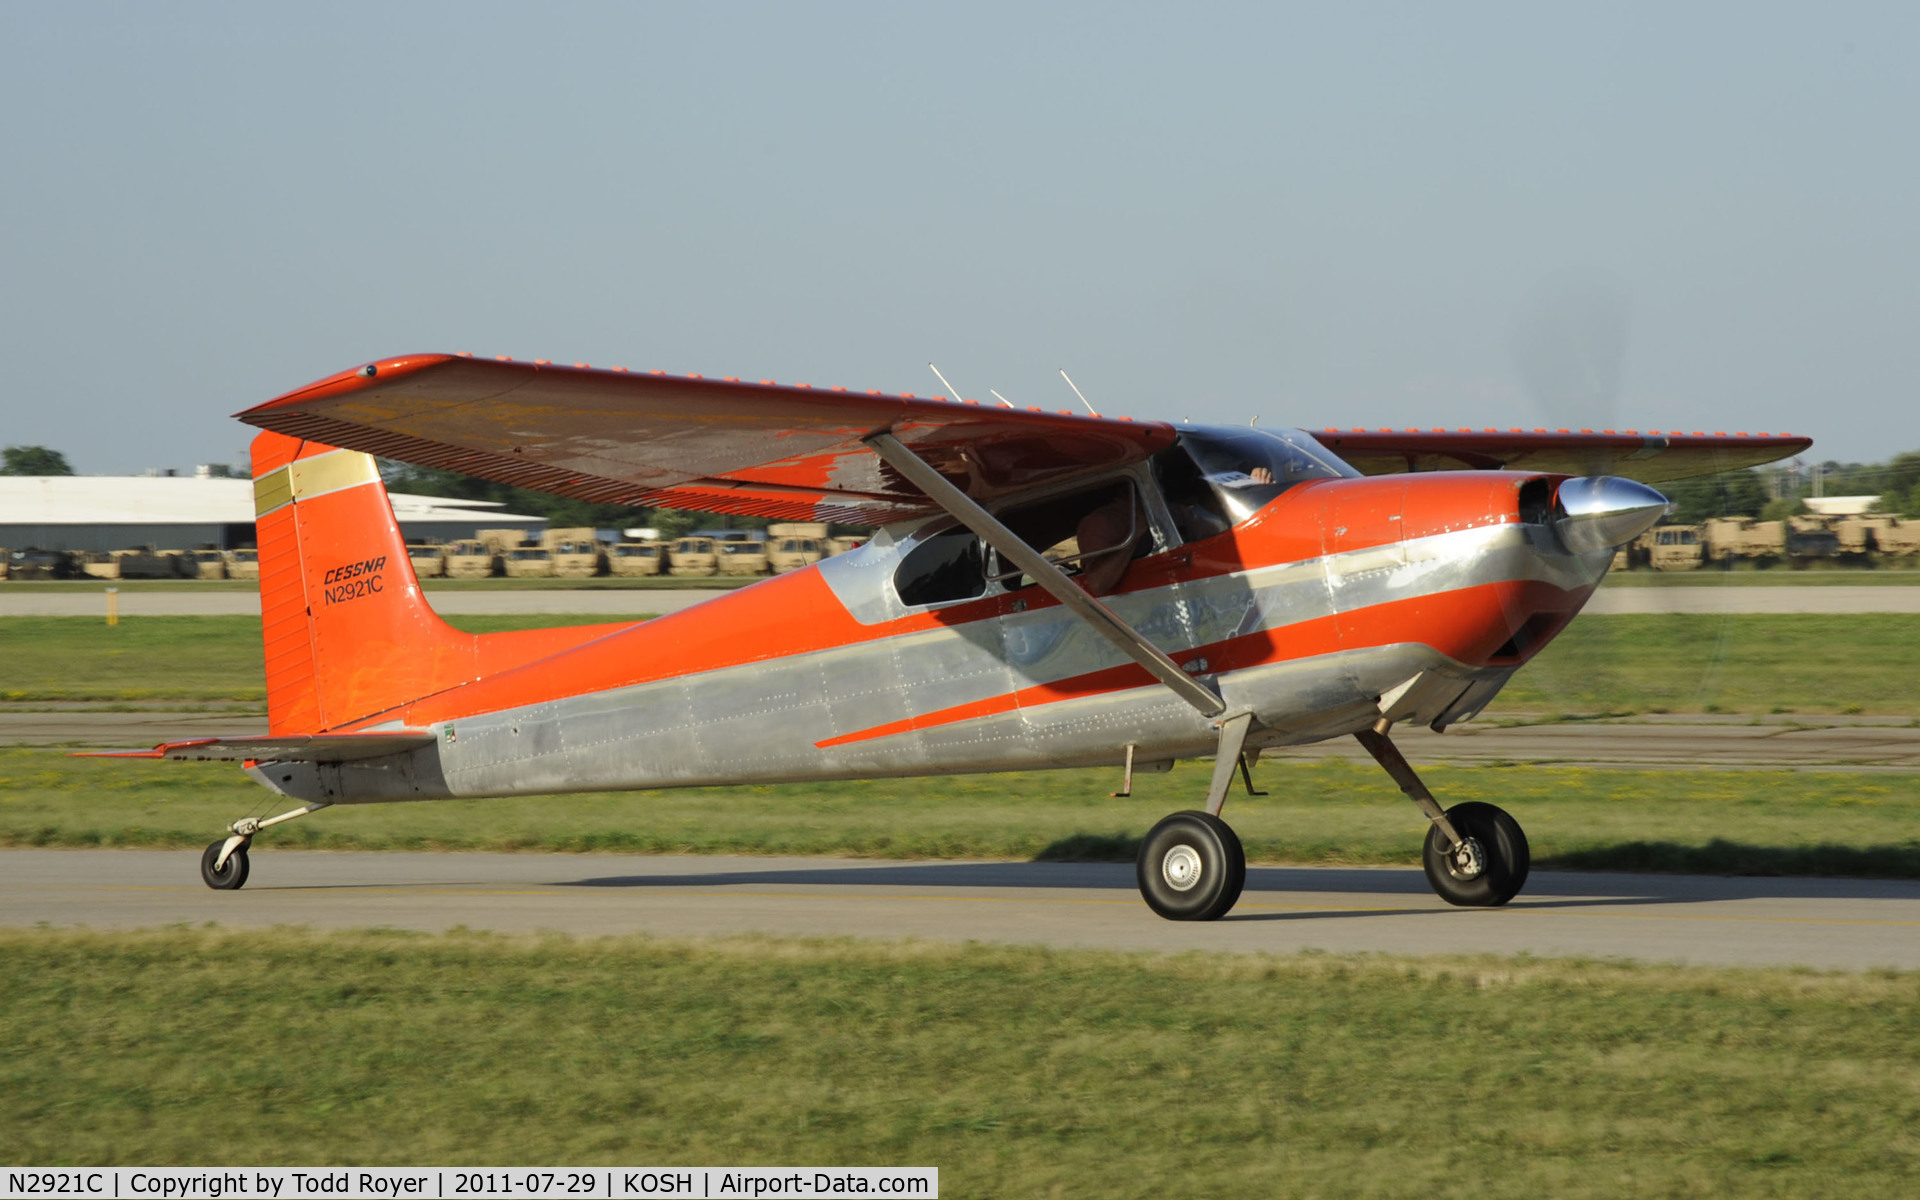 N2921C, Cessna 180 C/N 30821, AIRVENTURE 2011